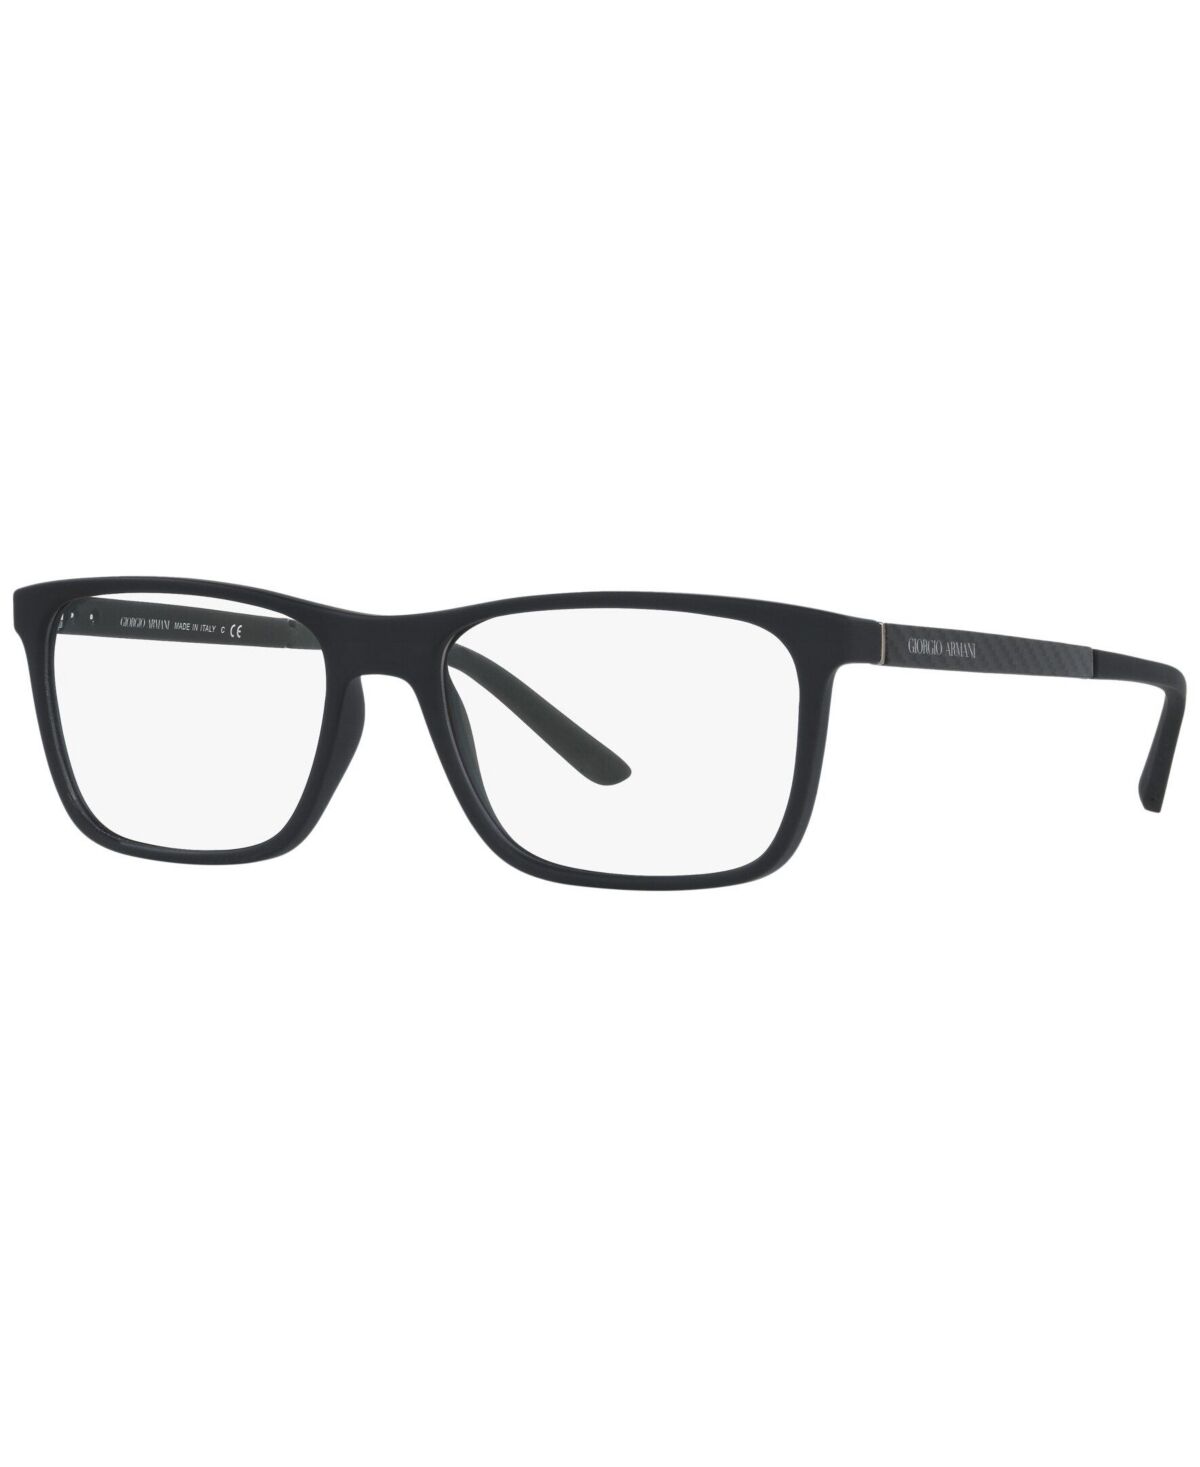 Giorgio Armani Men's Square Eyeglasses - Rubber Bla